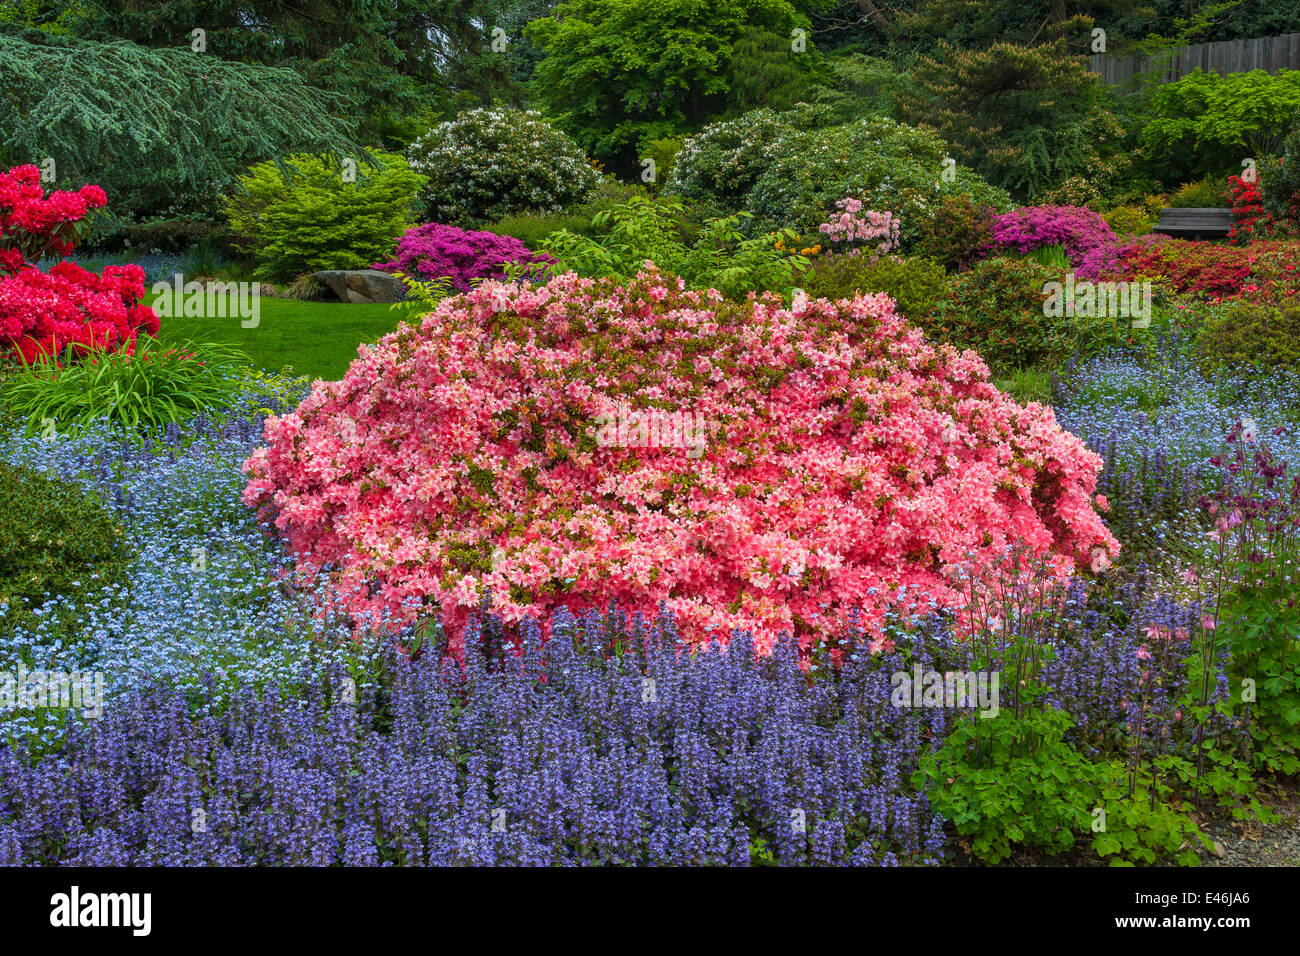 Kubota Garten, Seattle, WA: Blühenden Azaleen, Rhododendren und Ajuga im Bereich Tom Kubota Stroll des Gartens Stockfoto